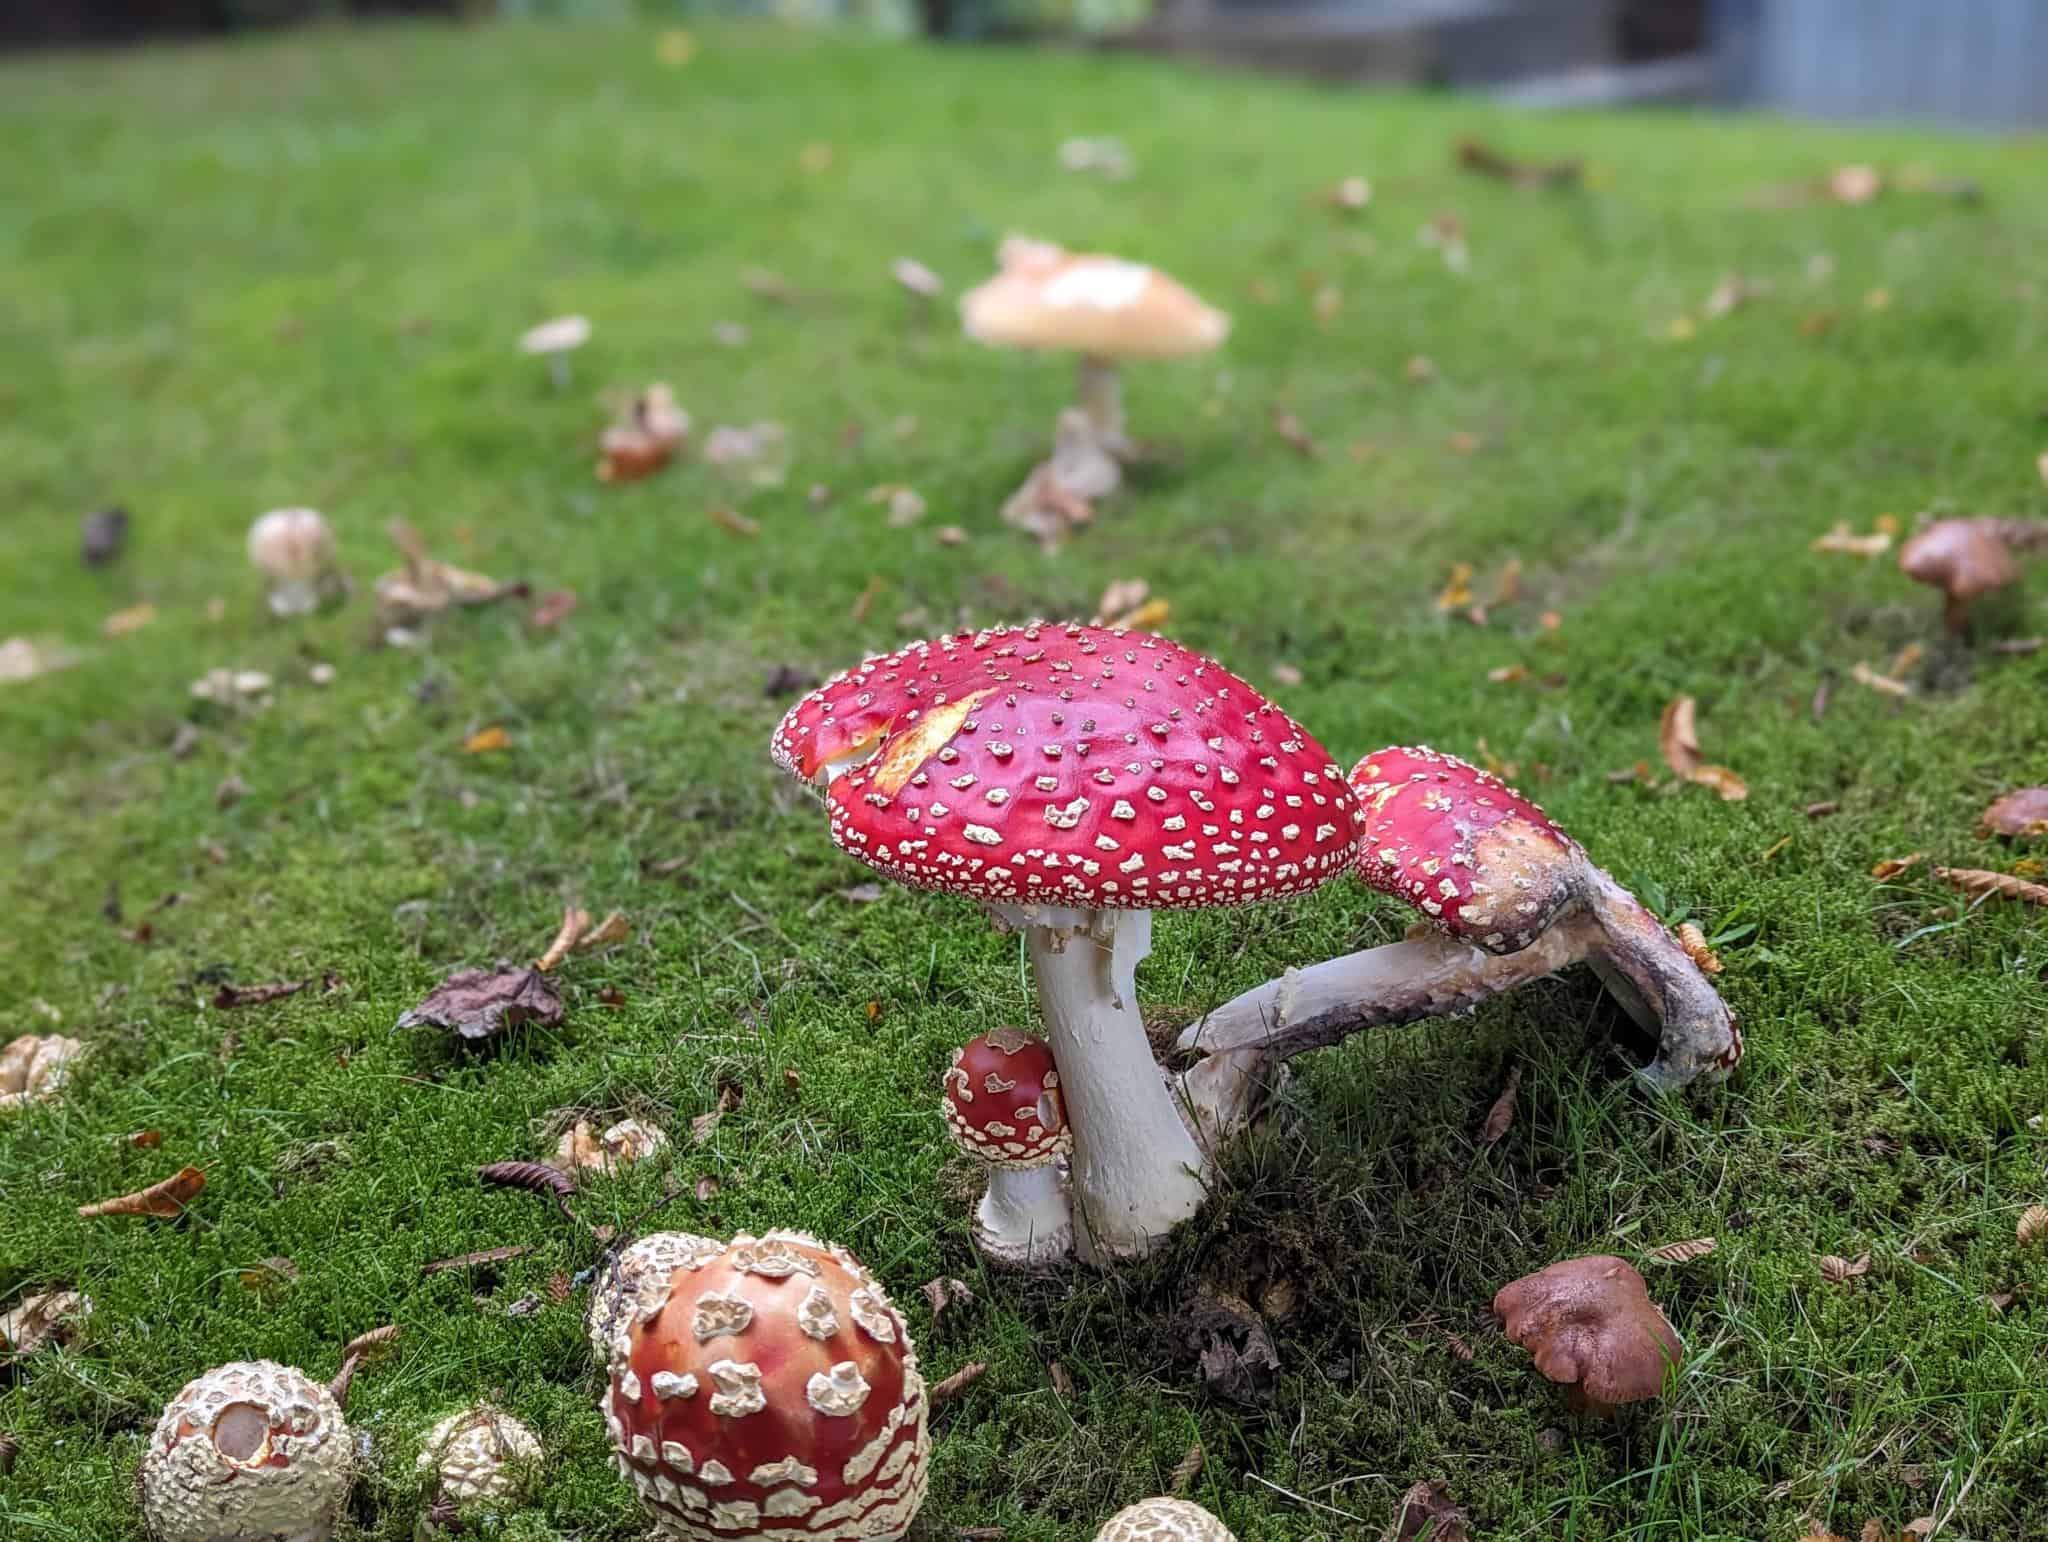 Beautiful red mushroom